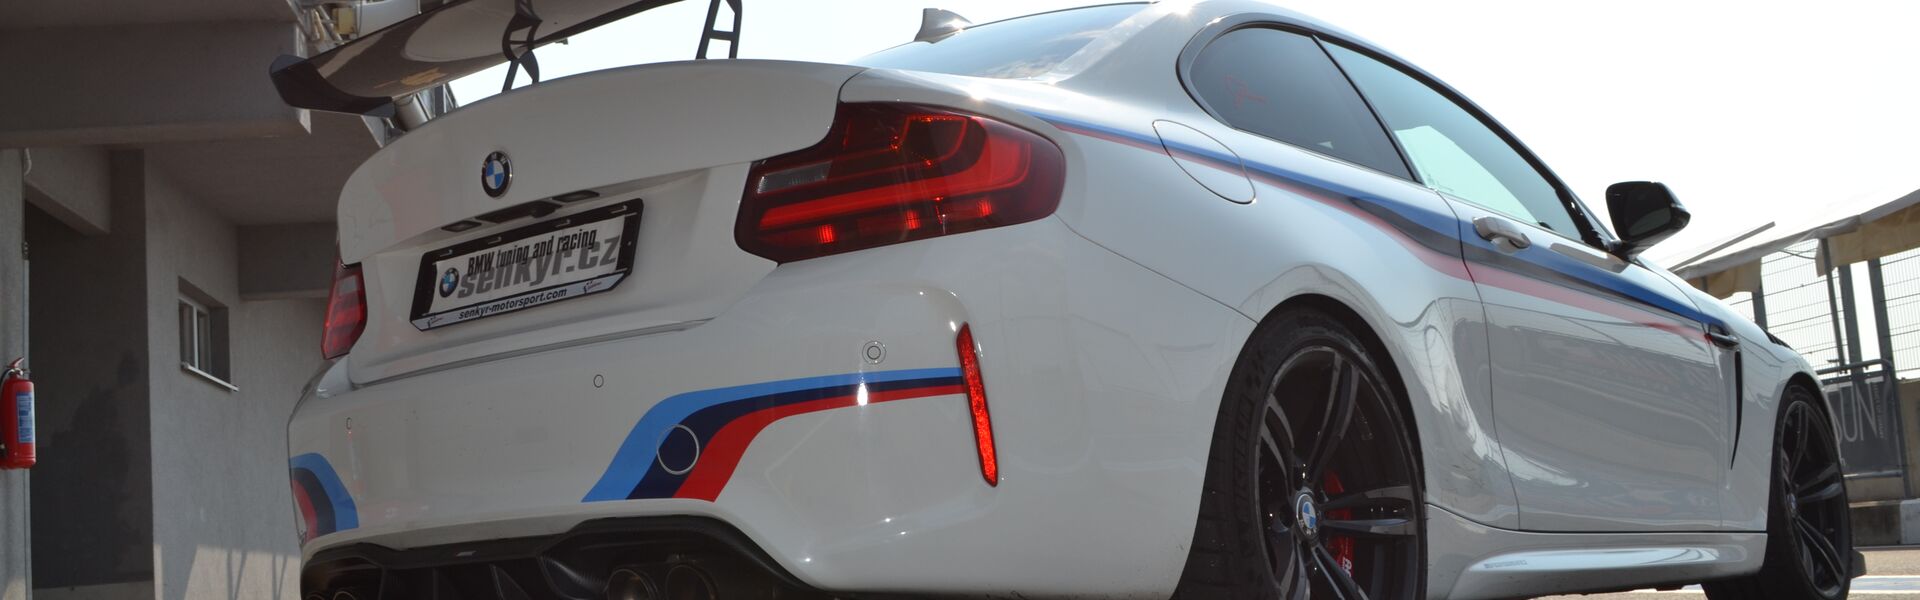 Bodykit/ Aerodynamické prvky pro automobil BMW M8 F93